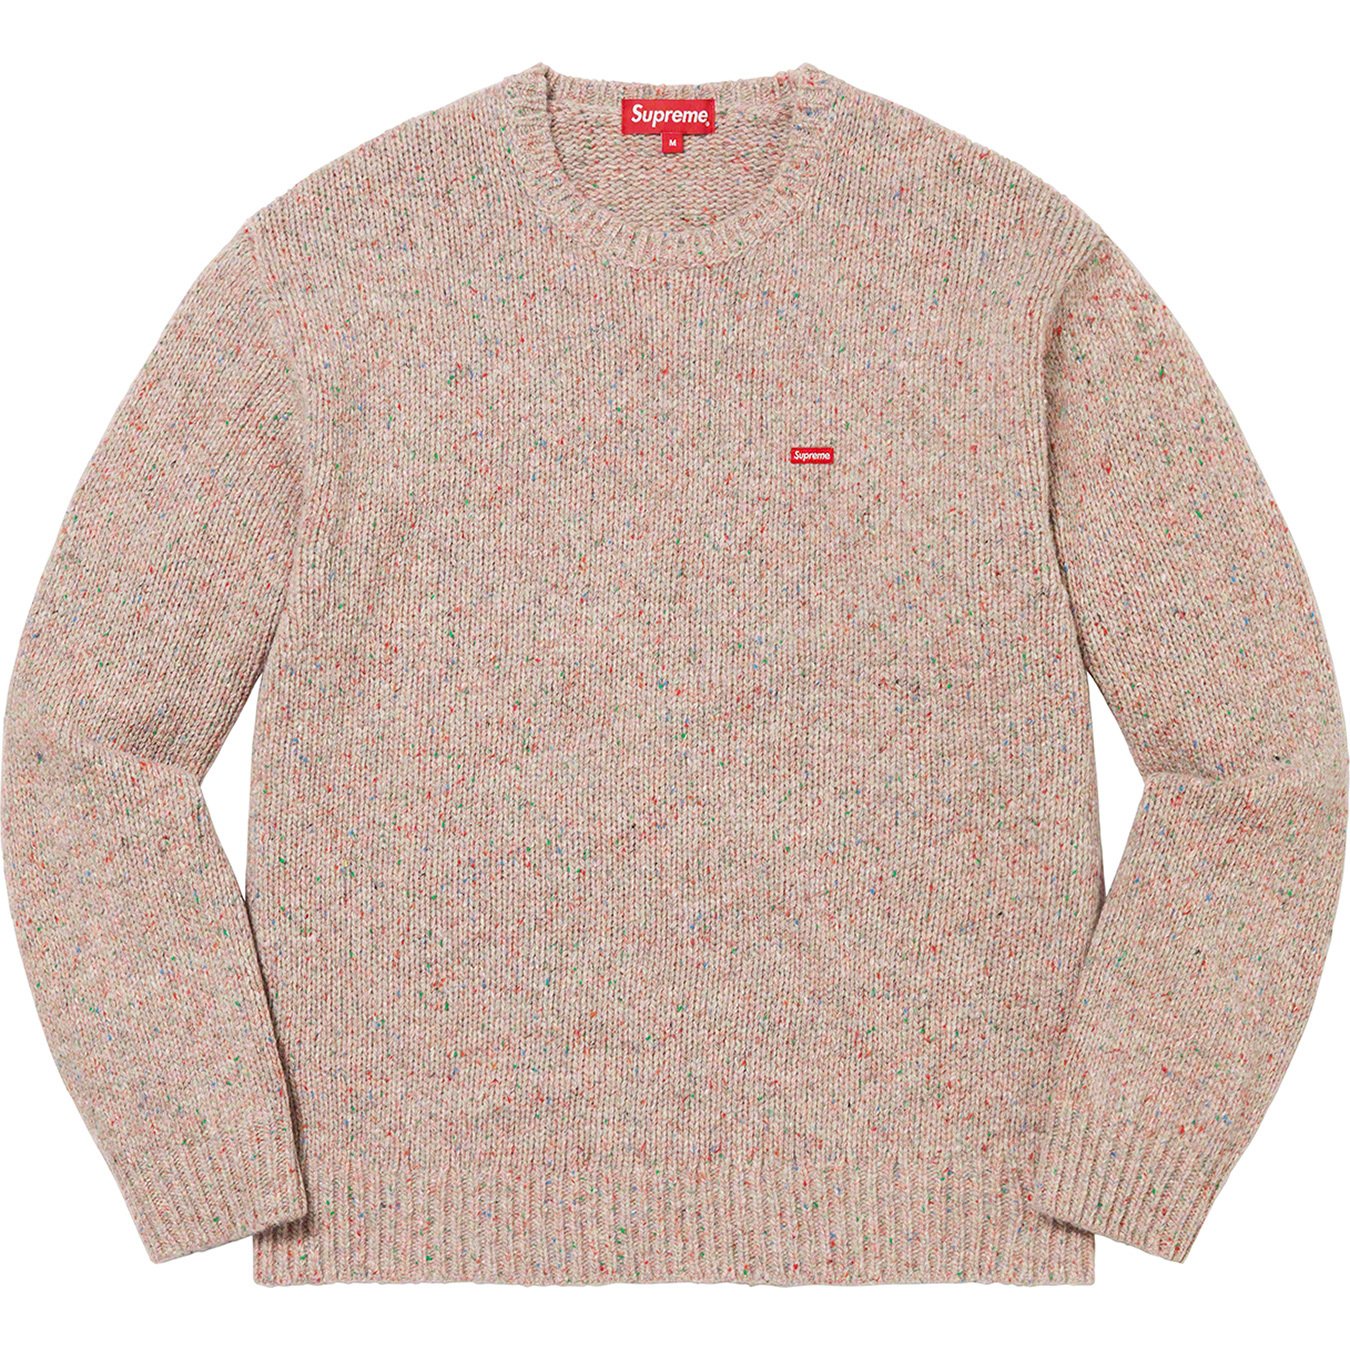 6,800円supreme small box speckle sweater S